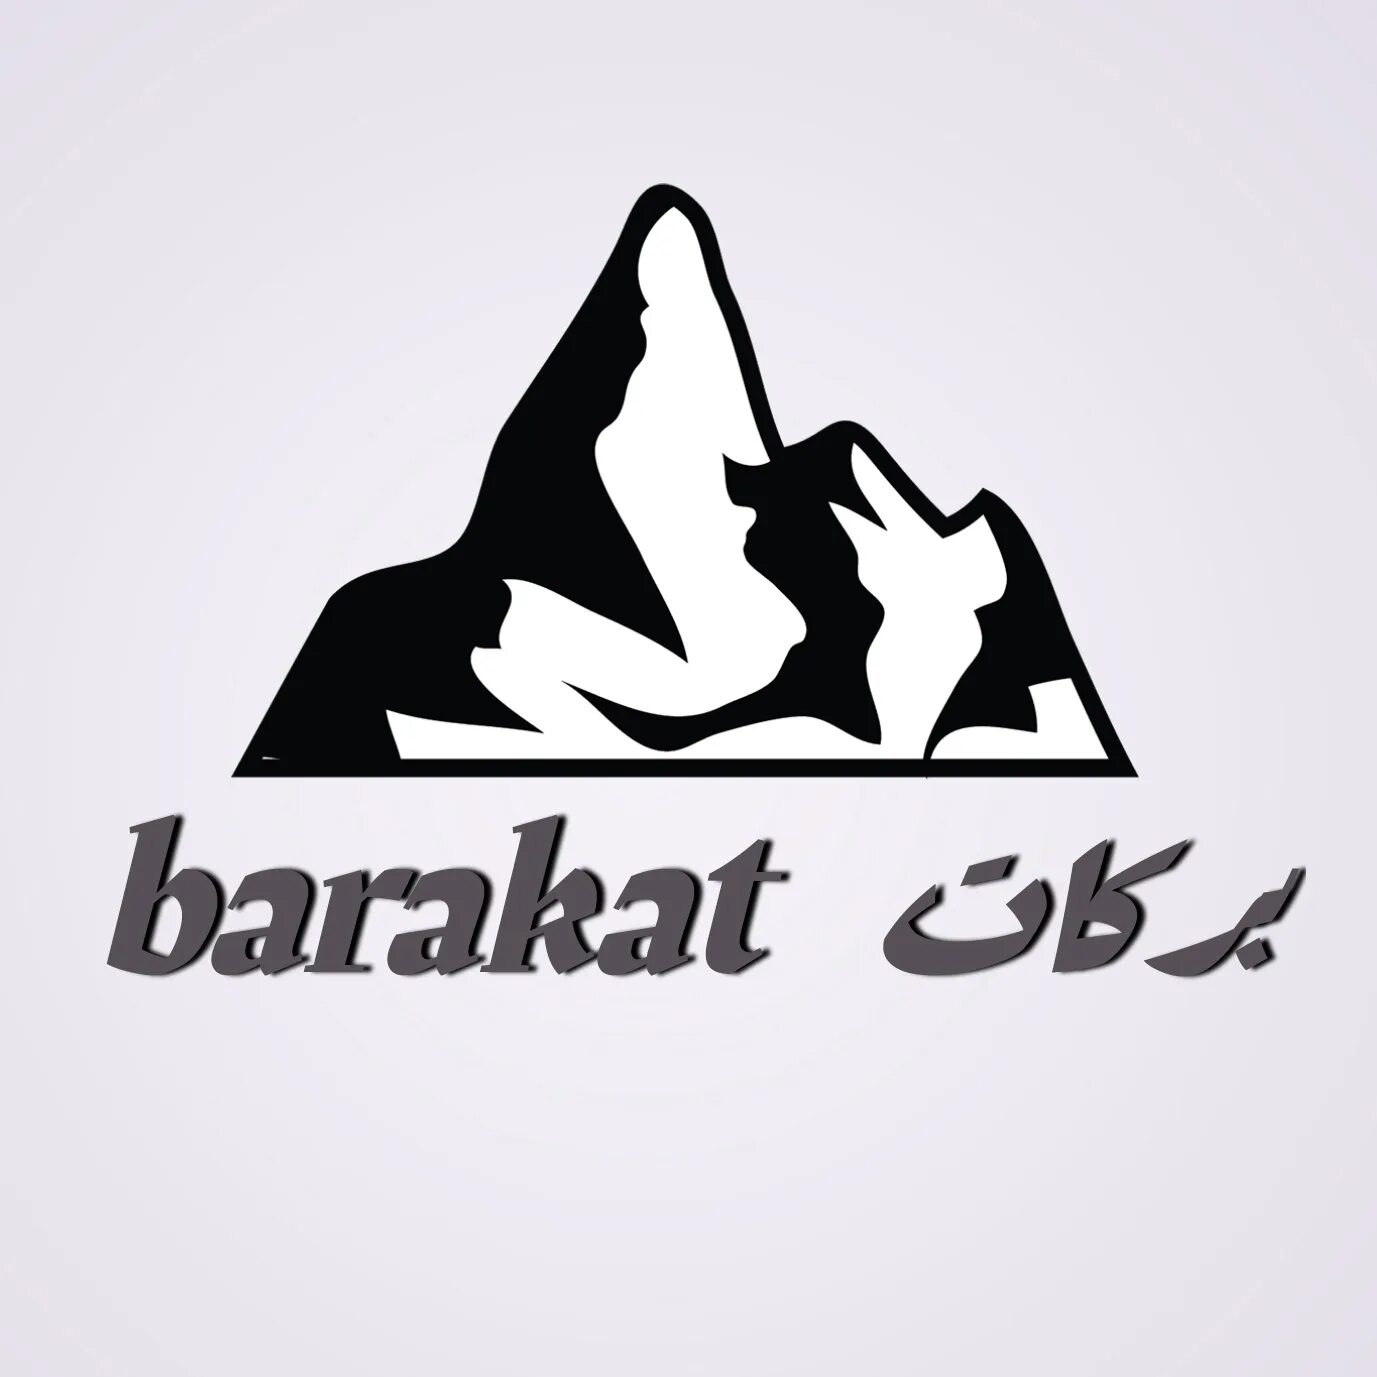 Слова баракат. Barakat. Barakat картинки. Аль Баракат лого. Кафе Баракат эмблема логотип.